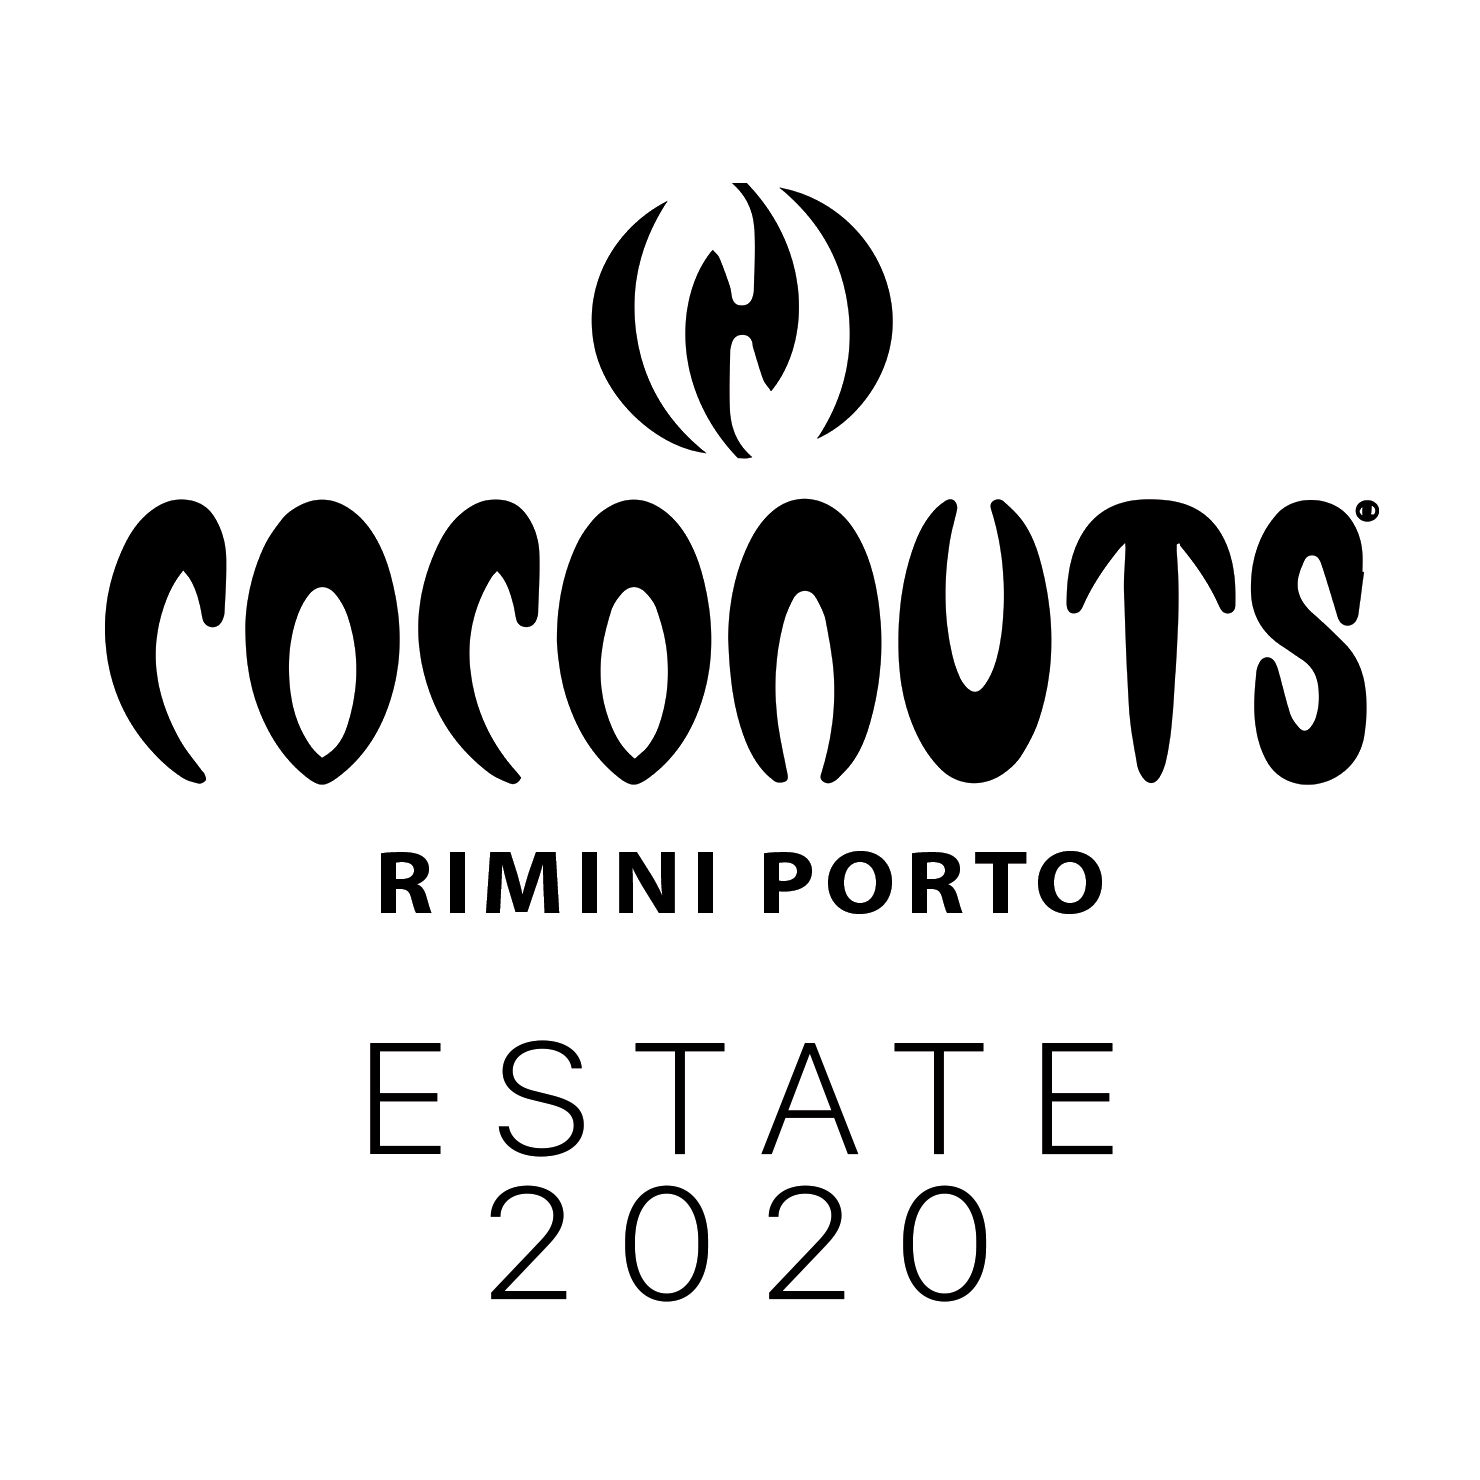 Coconuts Rimini, la seconda Domenica dell'Estate 2020